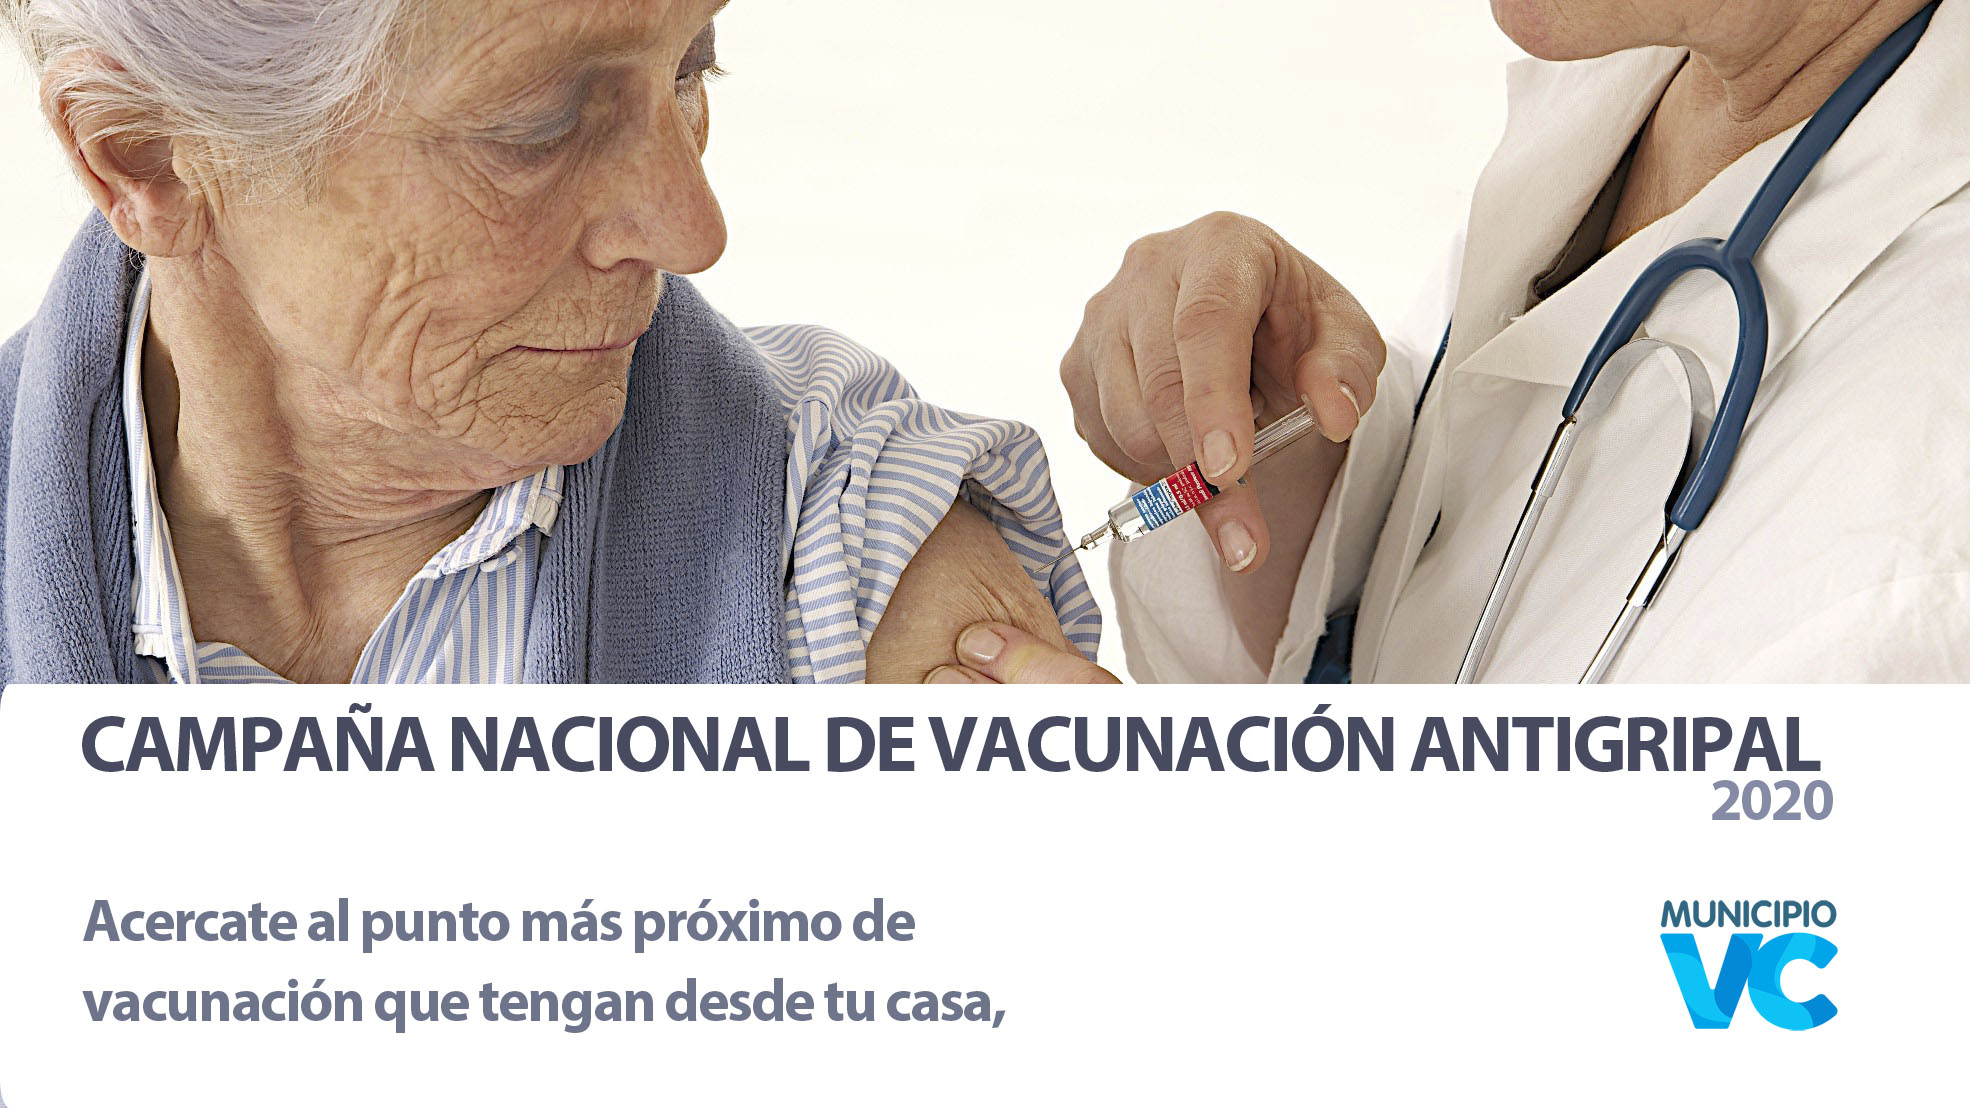 Campaña nacional de vacunacion antigripal 2020